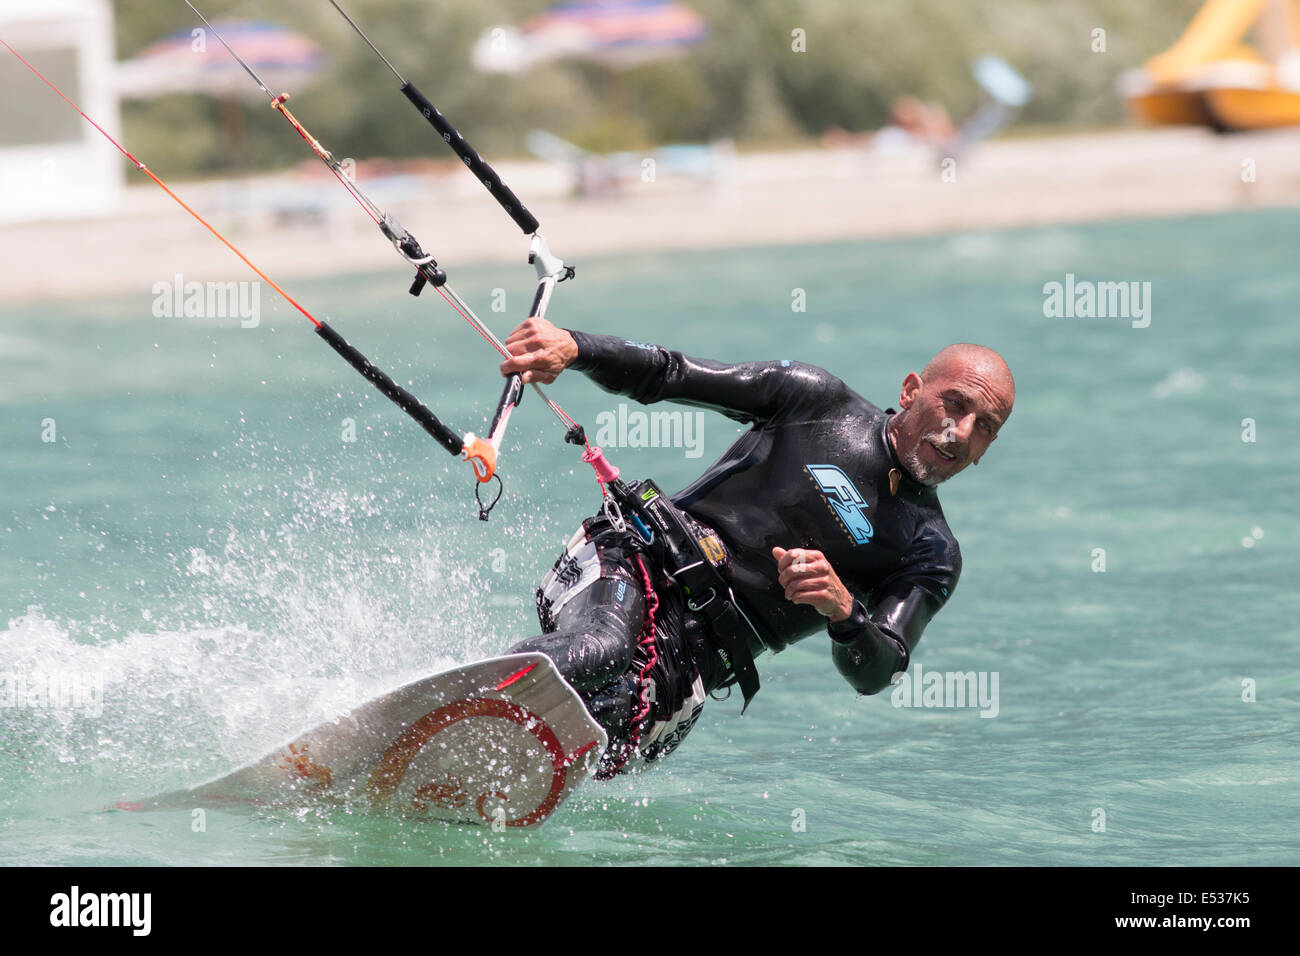 Lac DE SANTA CROCE, ITALIE - 12 juillet : kite-surfer professionnel démontrant sa capacité 2014, Juillet 12, 2014 Banque D'Images